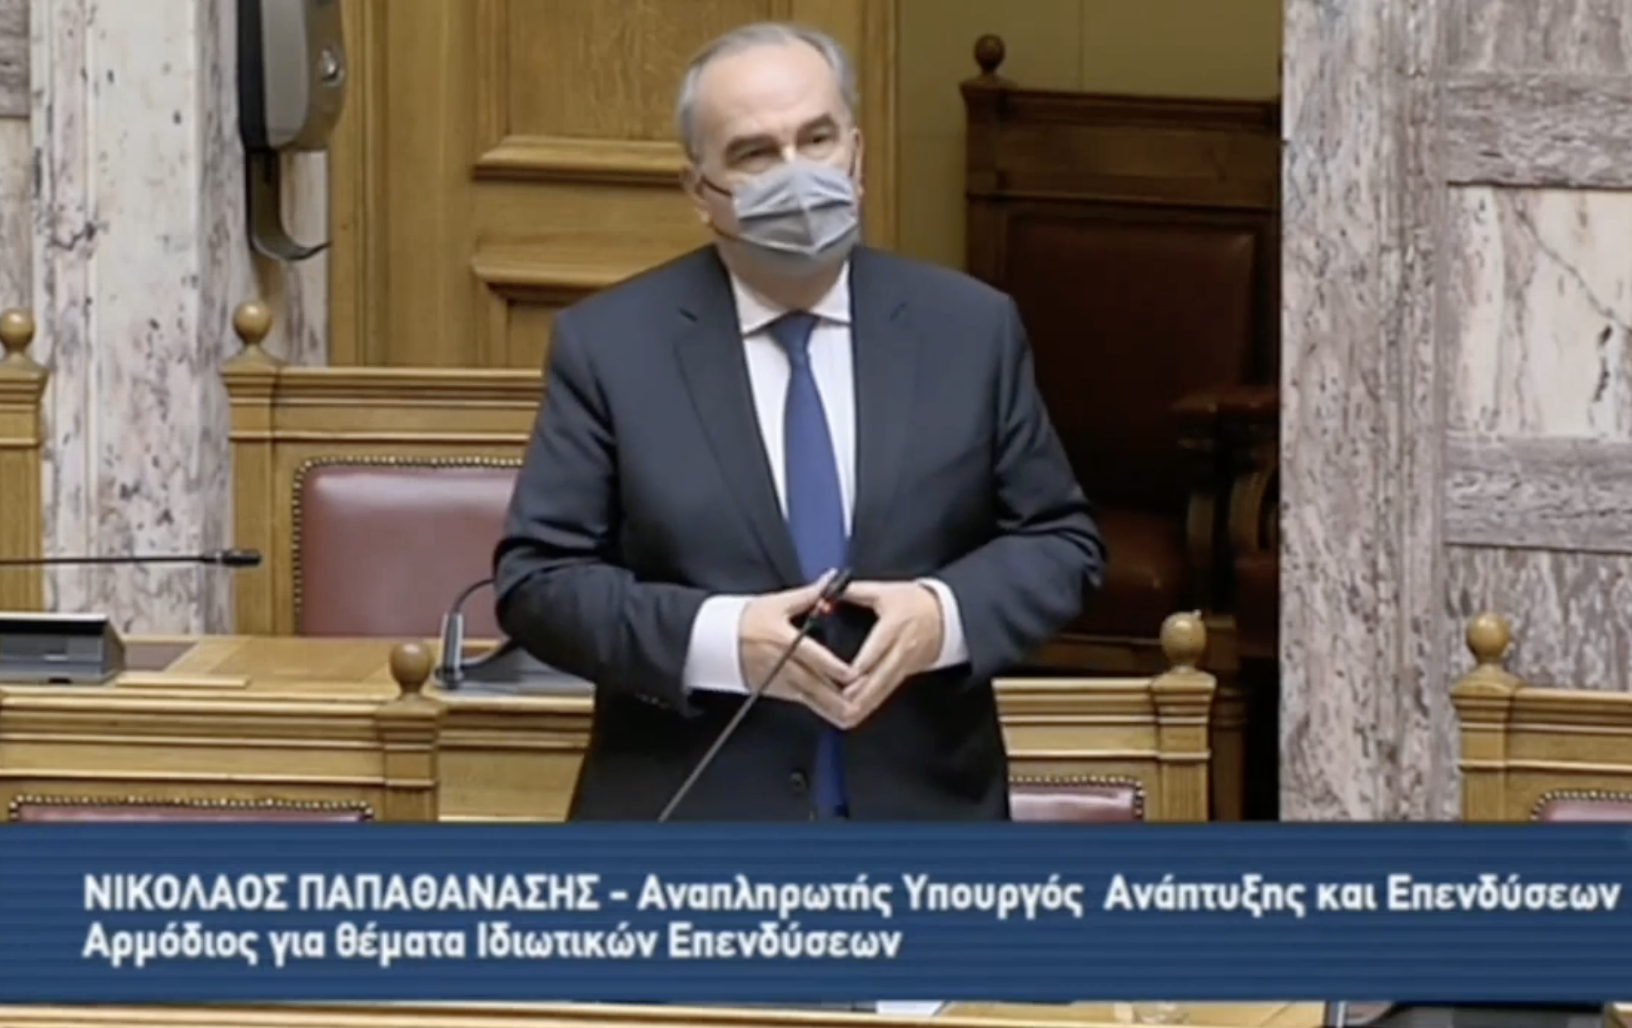 Απάντηση σε επίκαιρη ερώτηση, του Βουλευτή ΣΥΡΙΖΑ κ.Χαρίτου για τα επενδυτικά κίνητρα στην Θράκη μέσω του Αναπτυξιακού Νόμου